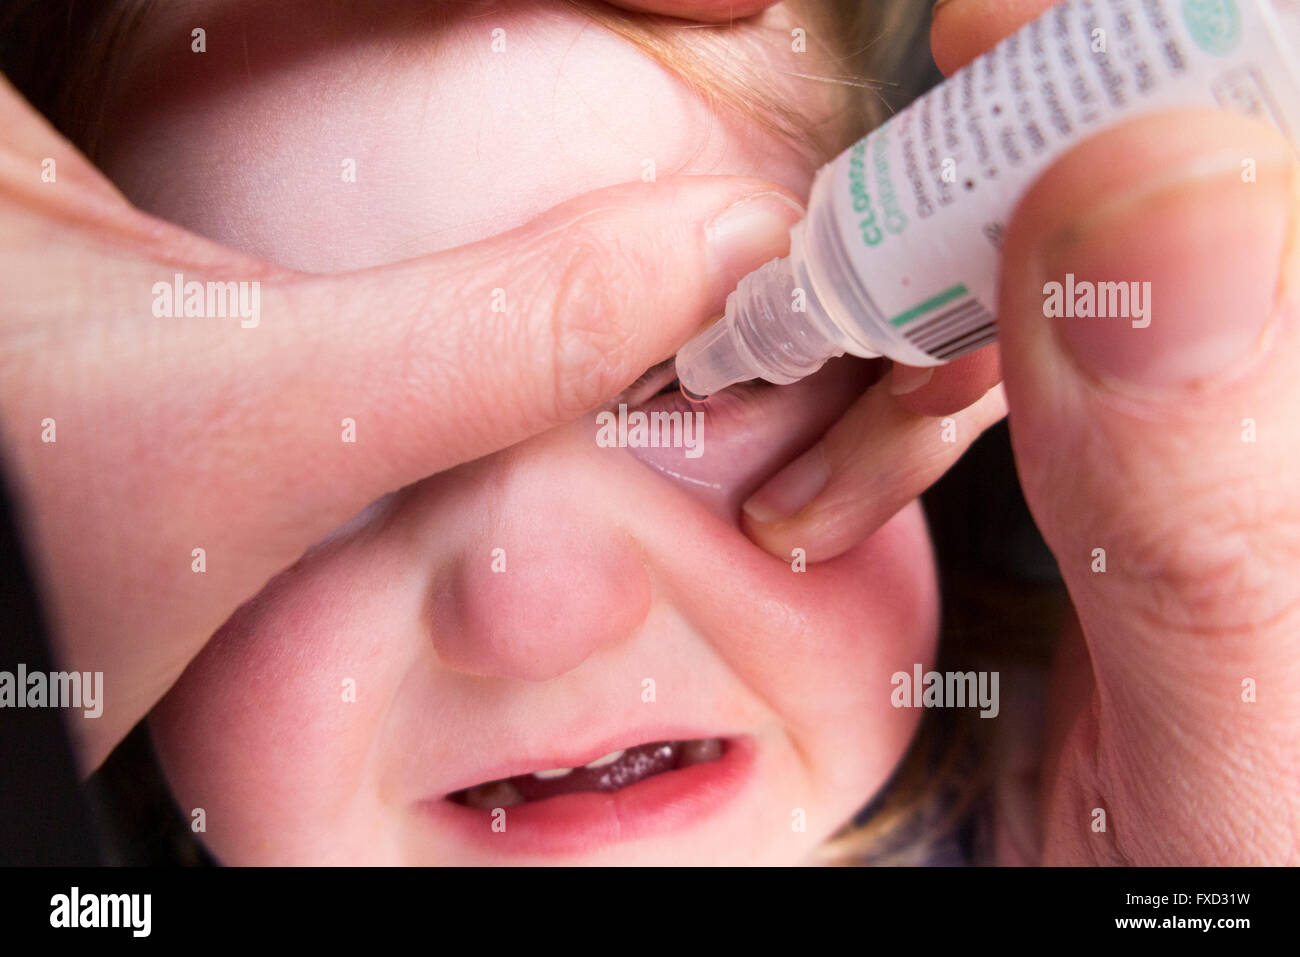 20 Monate altes Kind / Kind Kleinkind Baby mit Bindehautentzündung antibiotische Augentropfen Tropfen von ihrer Mutter gegeben werden / Mutter Stockfoto